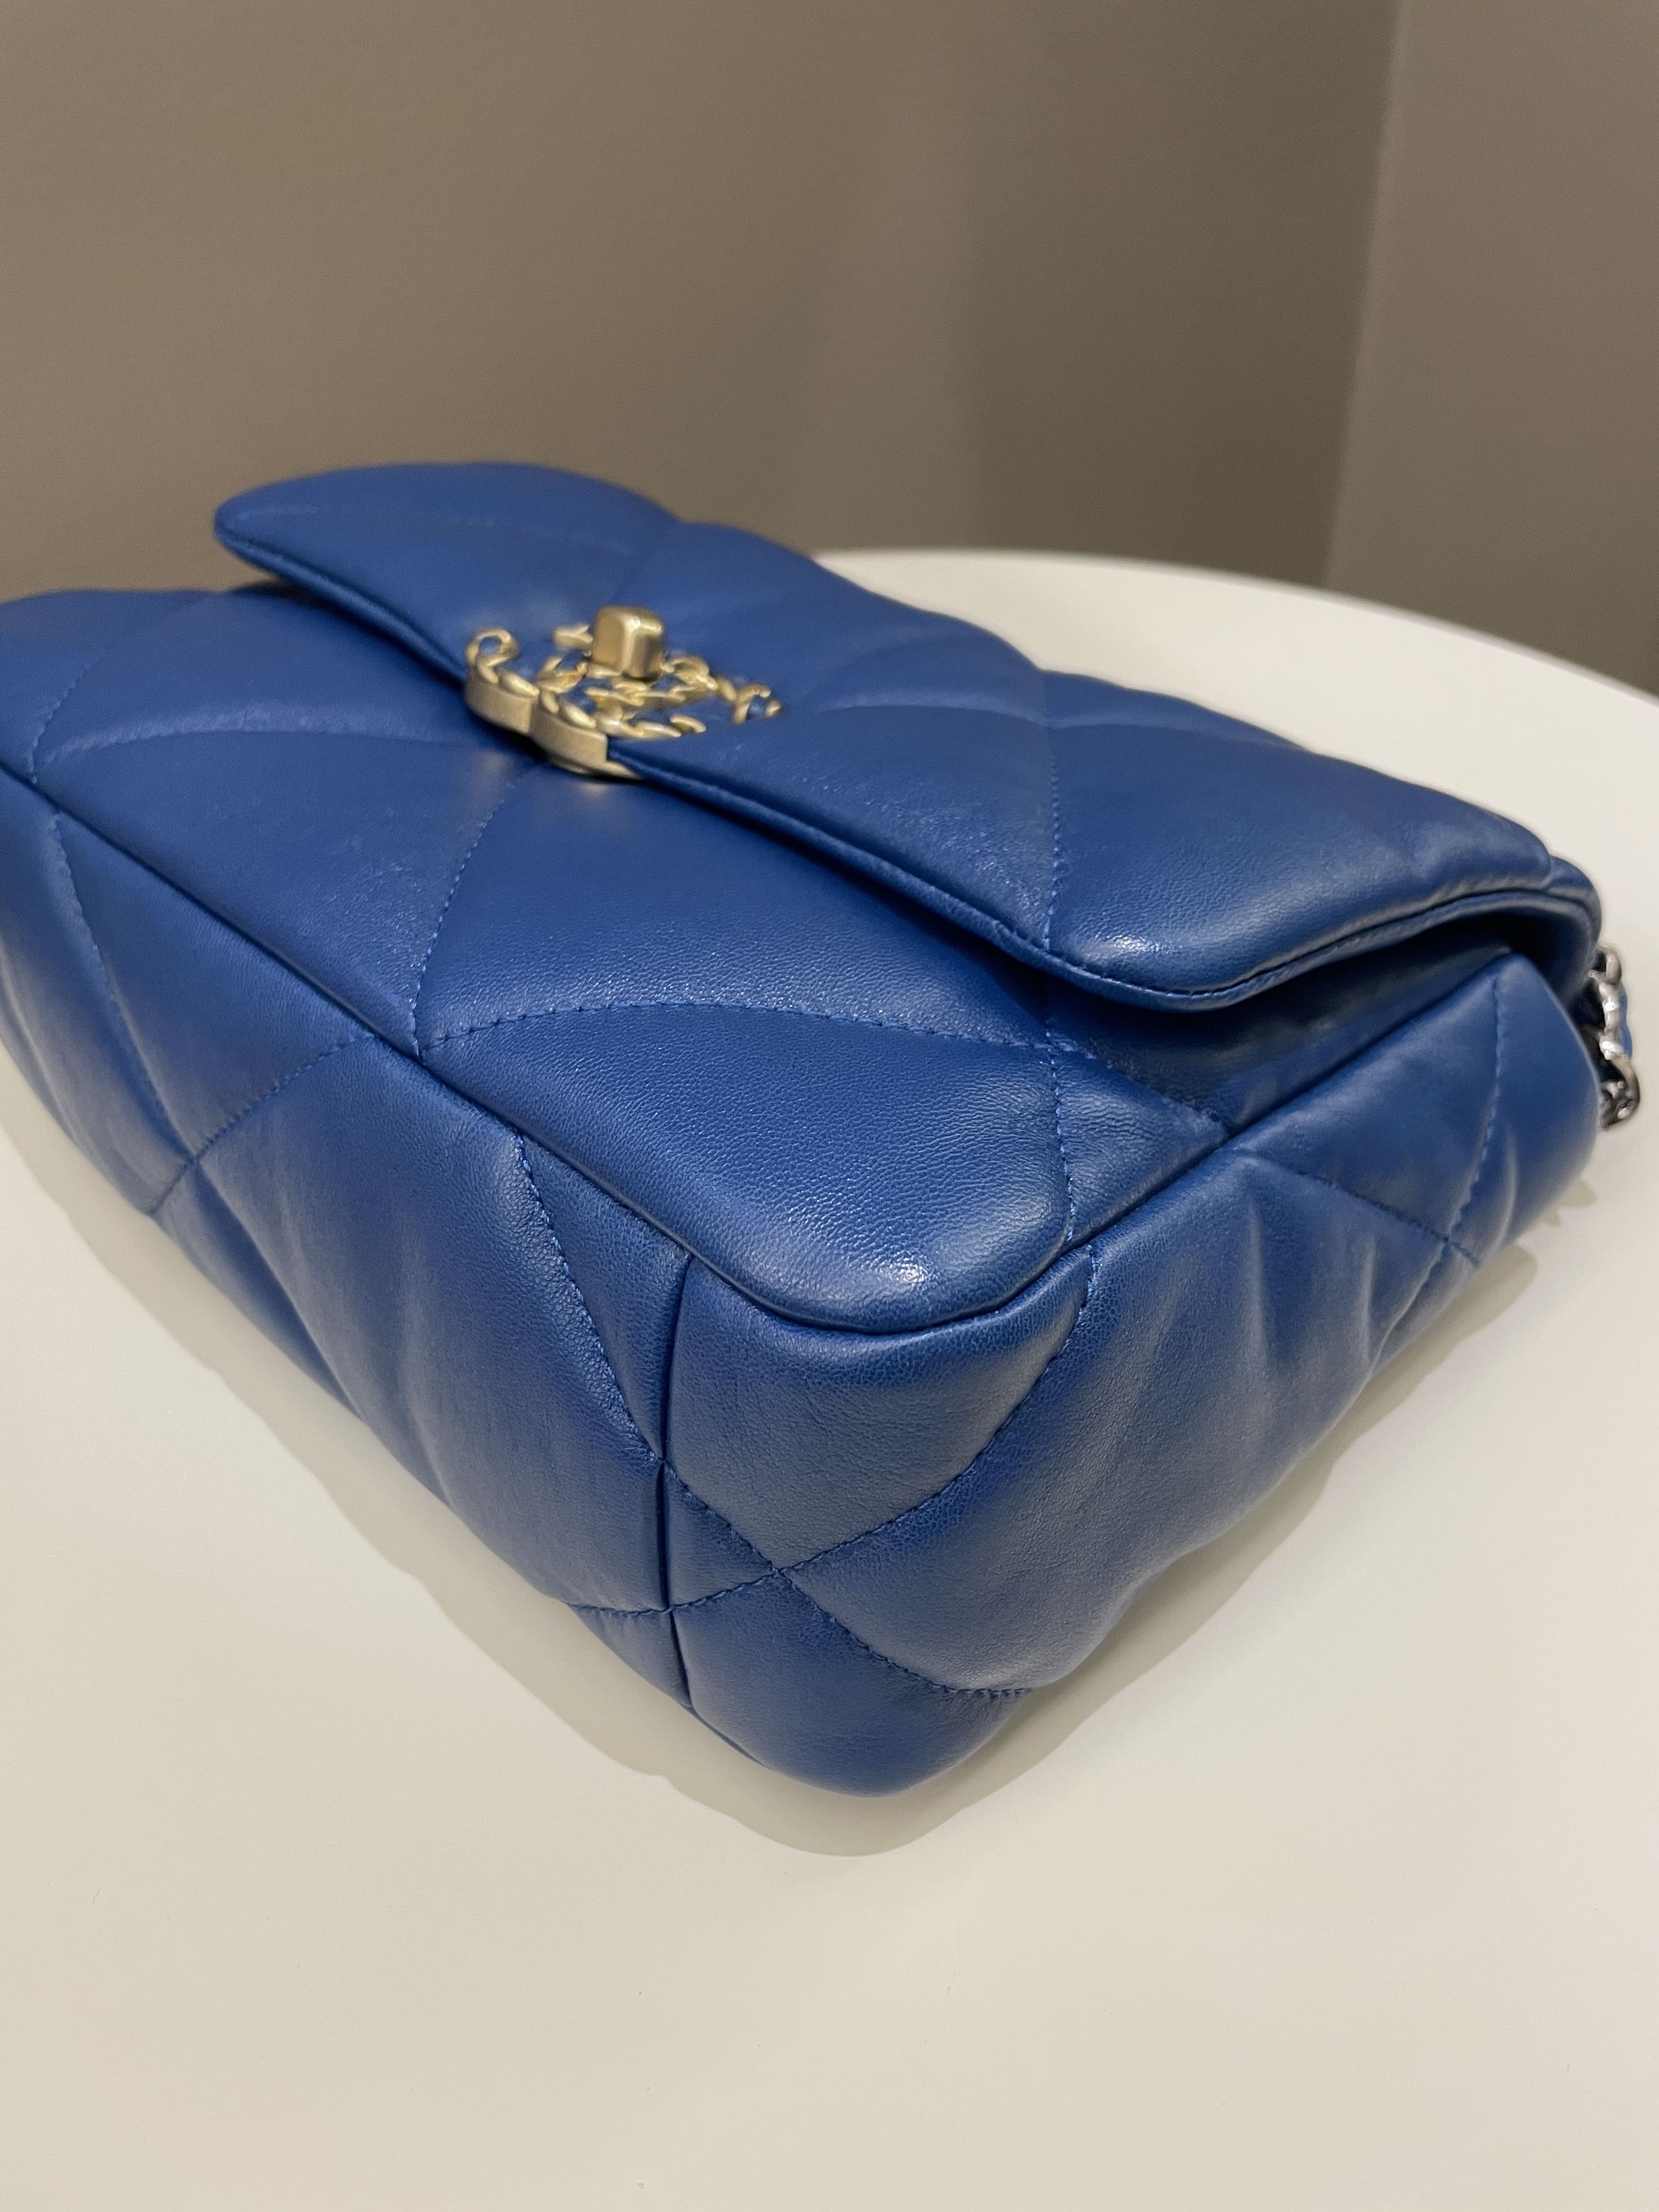 Chanel 19 Flap Bag Cobalt Blue Lambskin